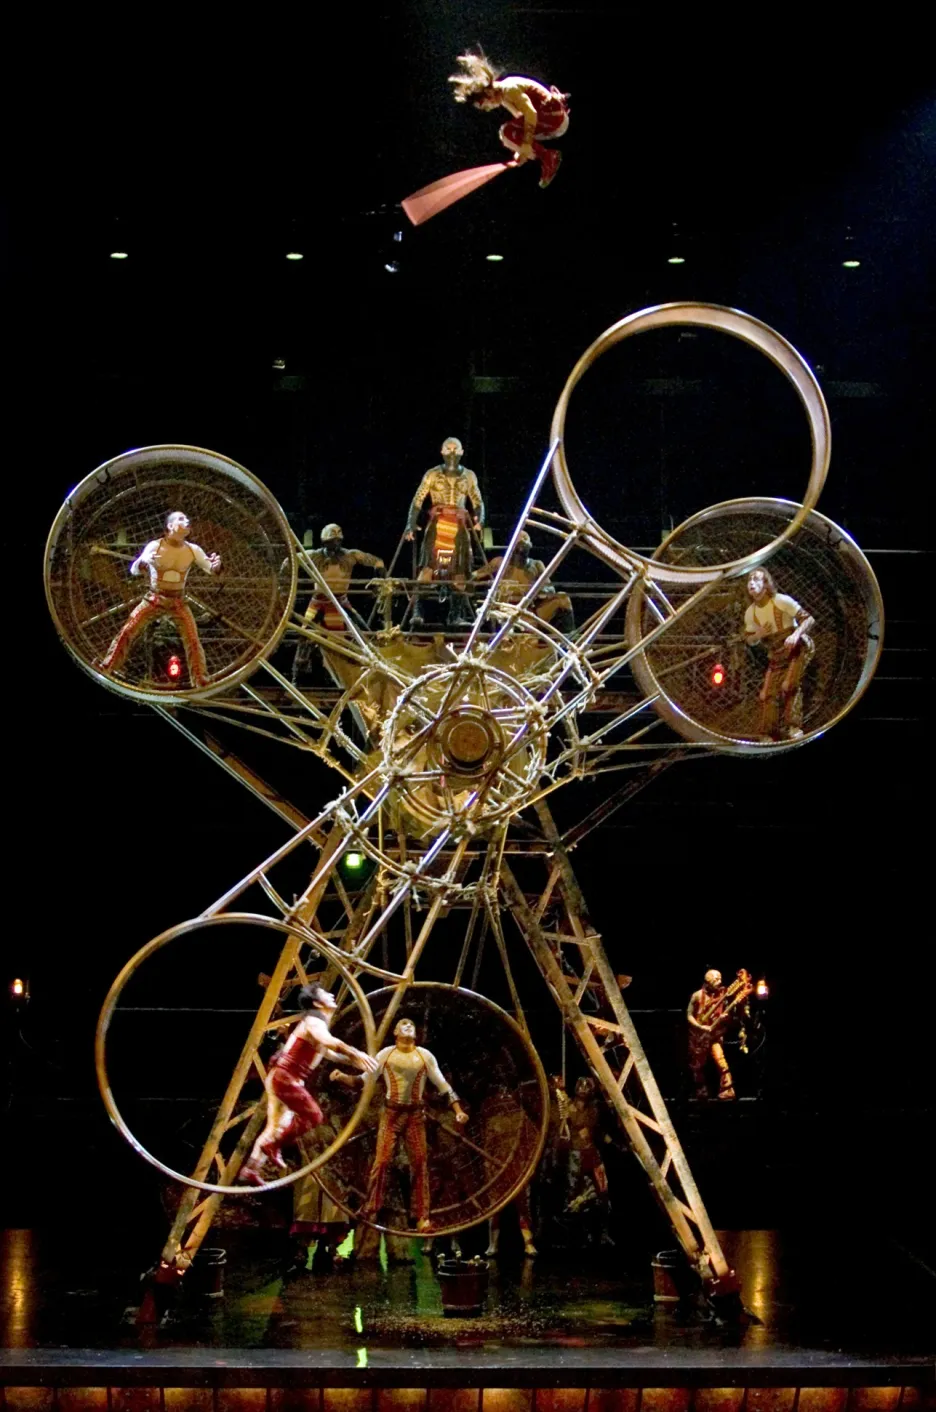 Cirque du Soleil ma vážné ekonomické problémy. Požádal o ochranu před bankrotem 